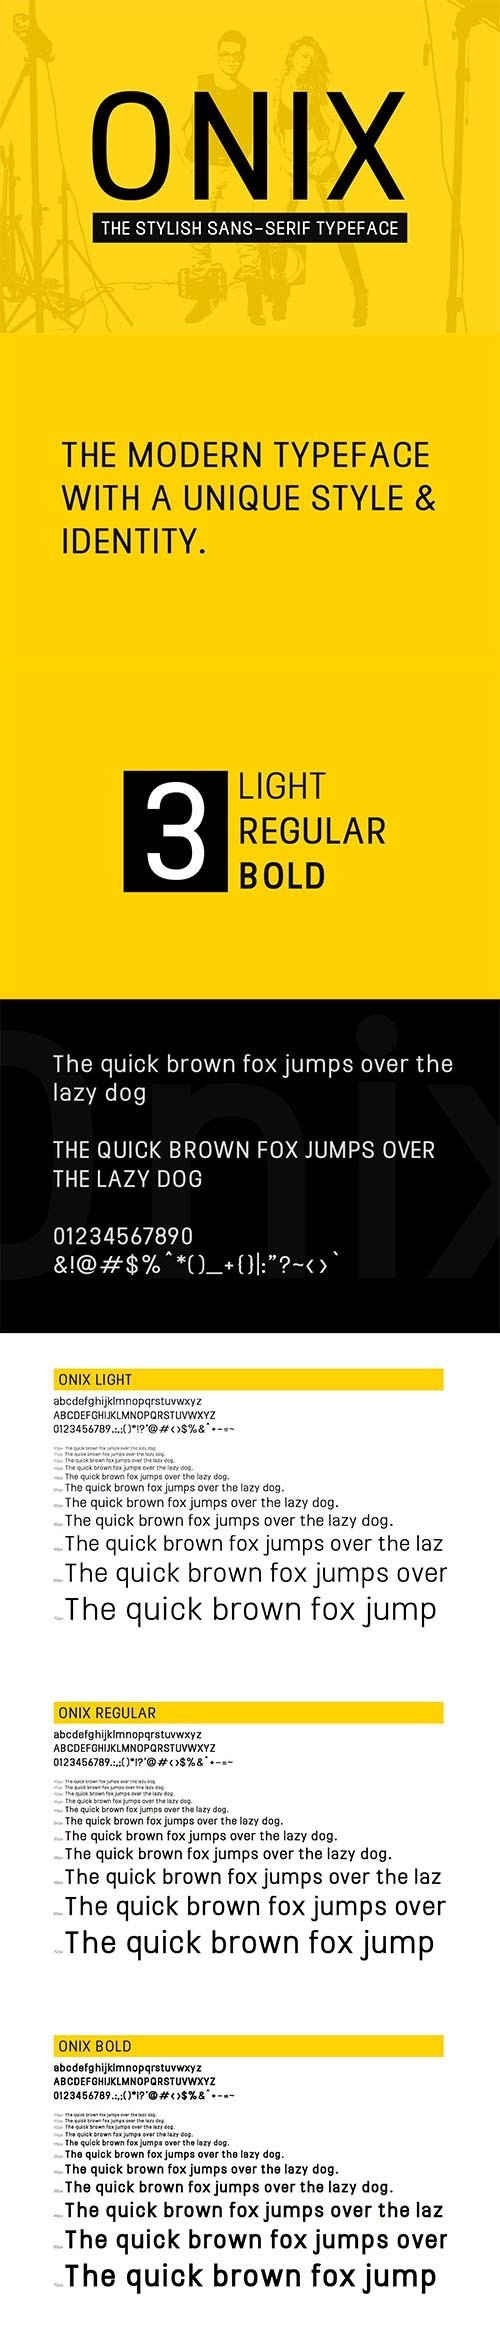 ONIX - Stylish Typeface + Web Fonts 2439776